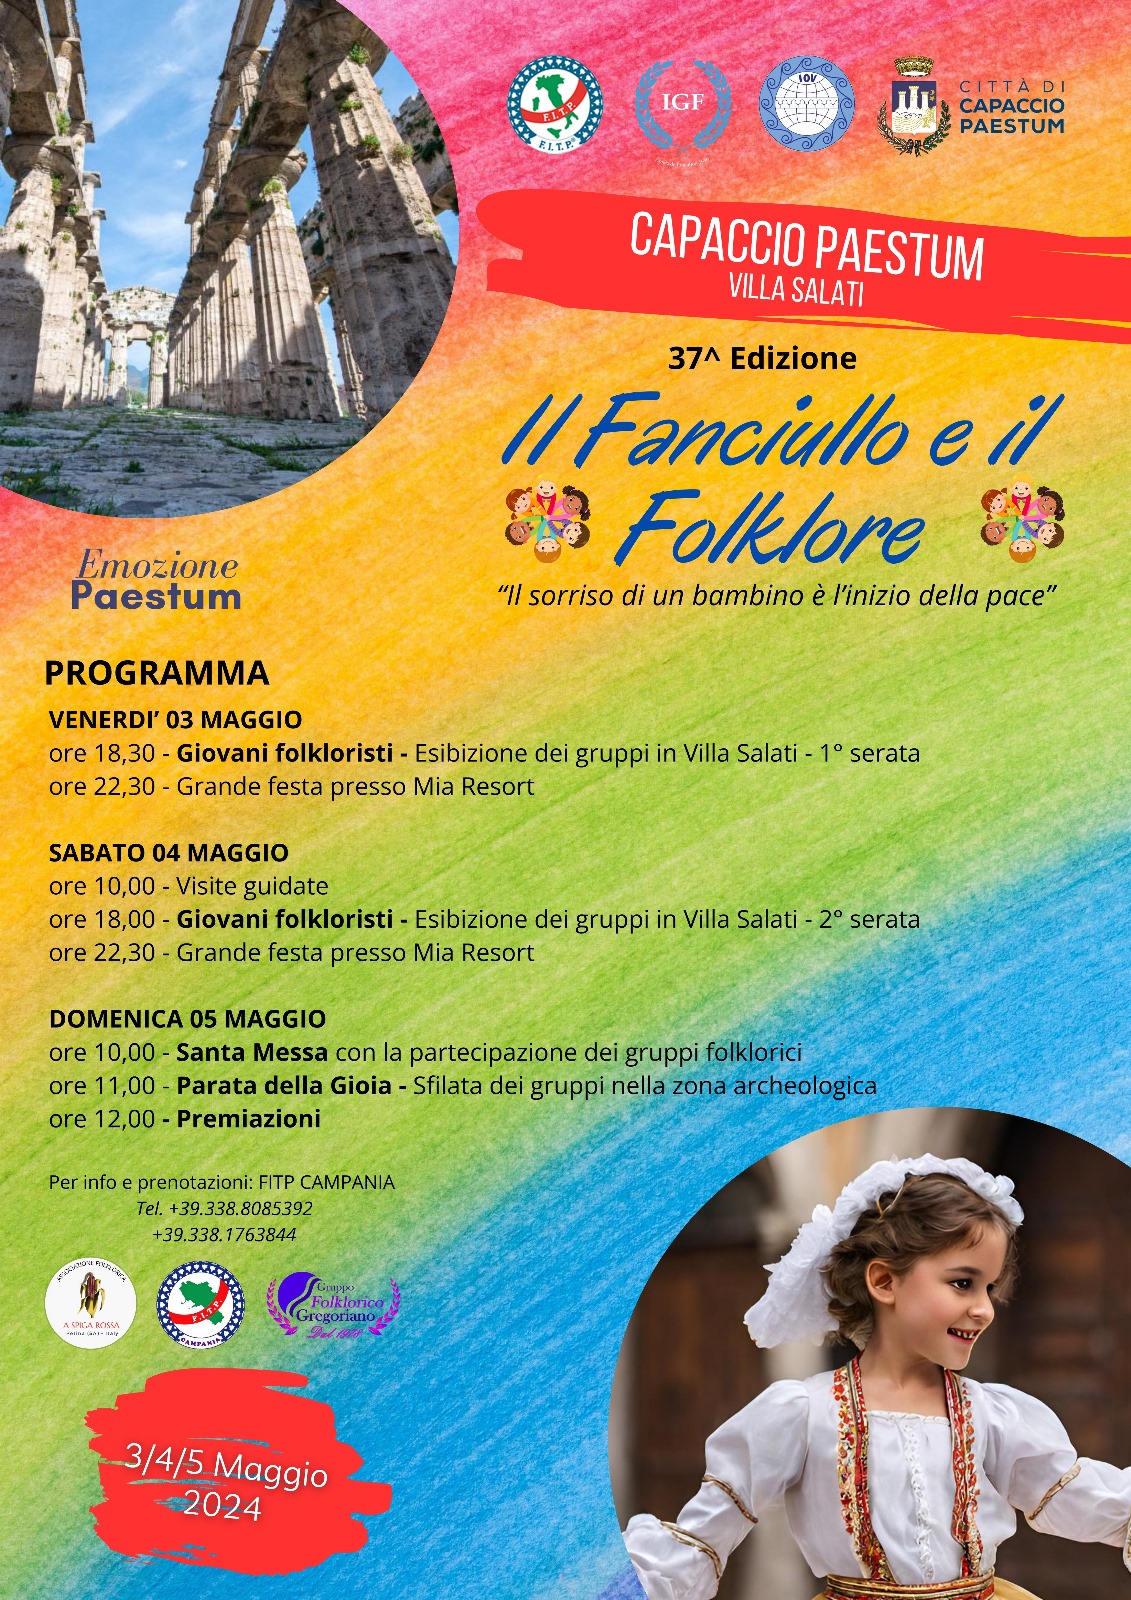 Il Fanciullo e il Folklore, in arrivo a Capaccio Paestum mille figuranti da tutta Italia e Europa